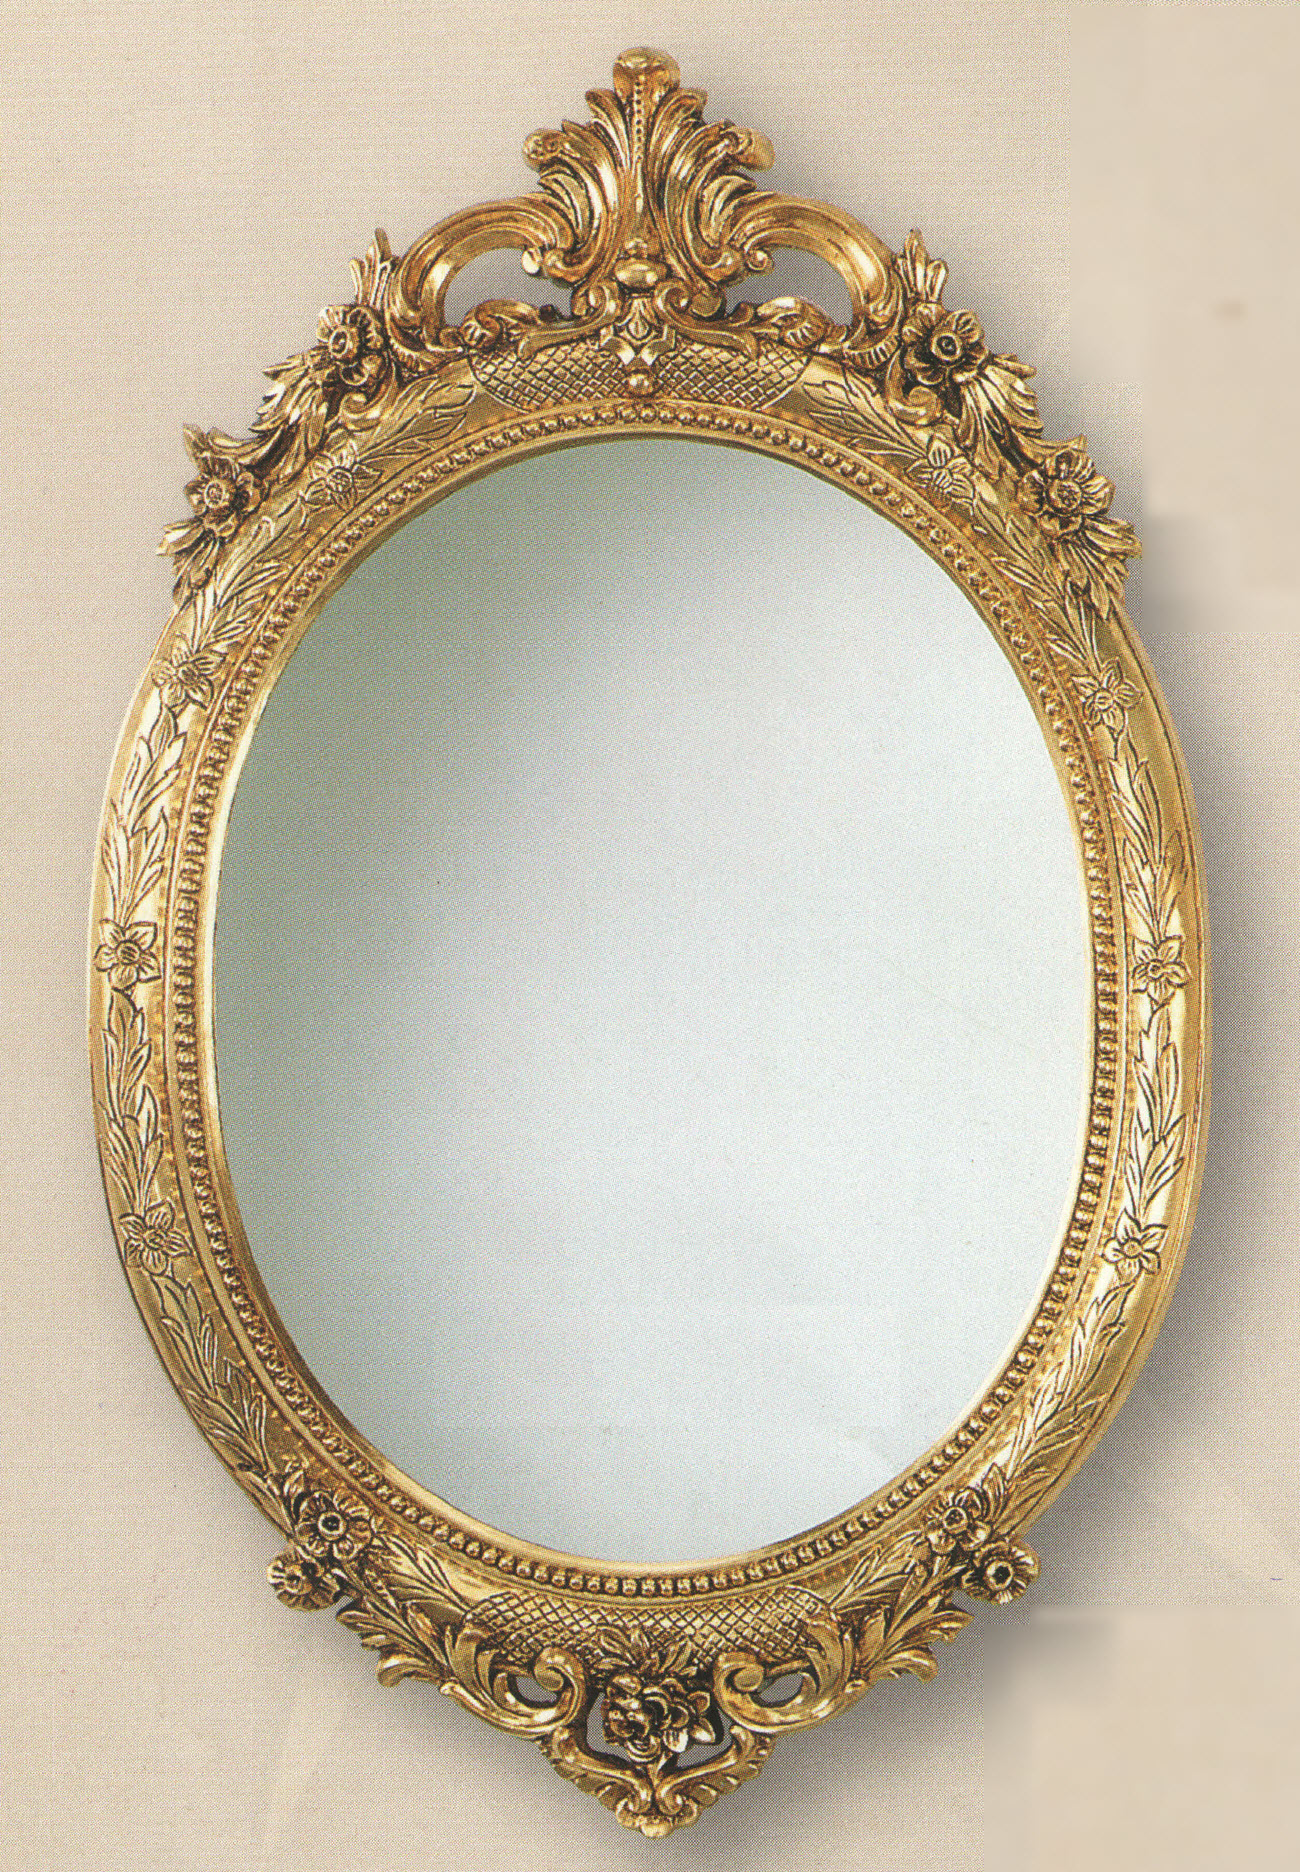 Авито зеркала настенные. Настенное зеркало Minerva 992 Silik. C475-SP-AP Euromarchi зеркало. Зеркало настенное влагостойкое античное золото Eloise артикул: 00-3948324. Настенные зеркала небольшие.